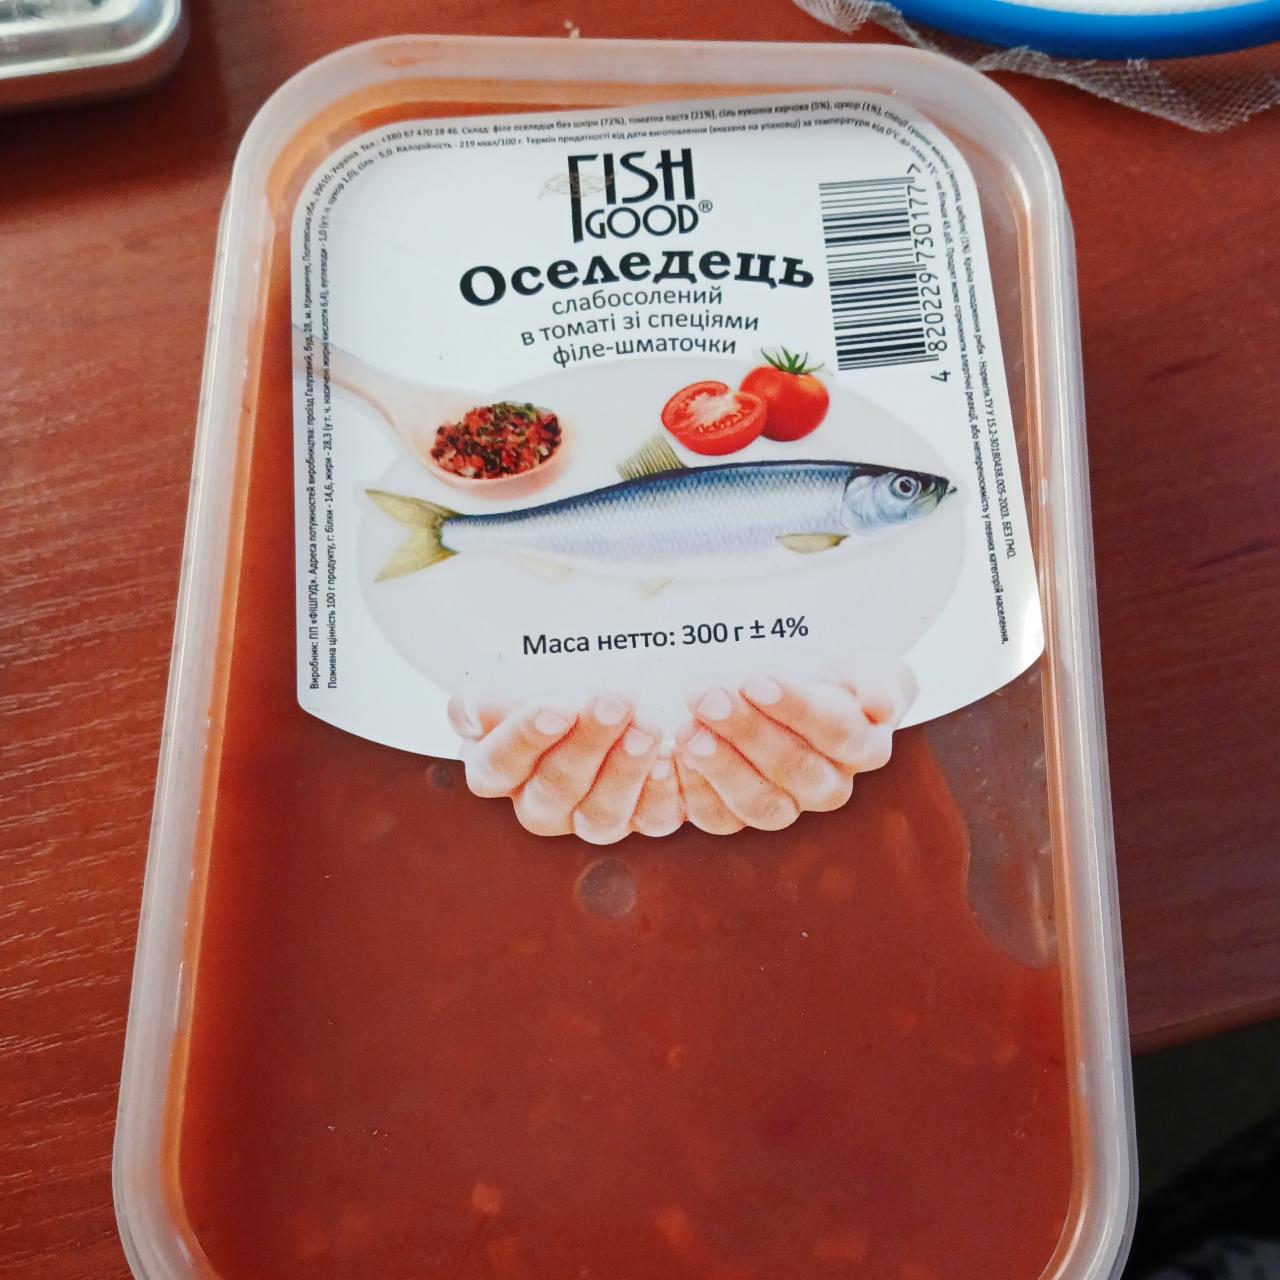 Фото - Оселедець слабосолений в томаті зі спеціями філе-шматочки Fish Good